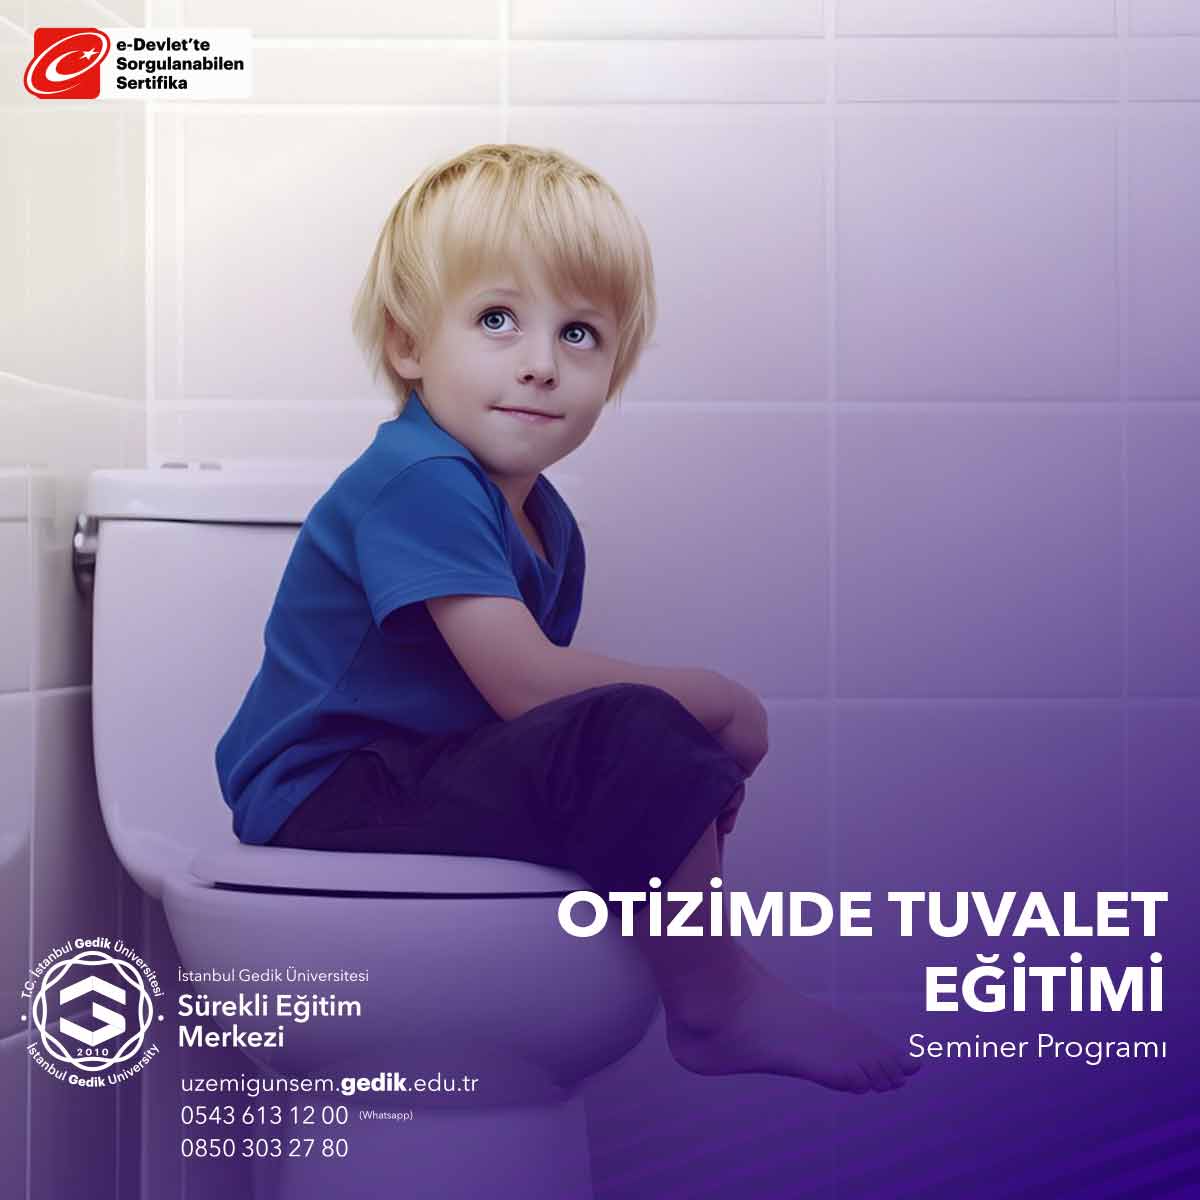 "Otizmde Tuvalet Eğitimi Semineri," otizm spektrum bozukluğu (ASD) tanısı almış bireylere tuvalet eğitimi verme konusunu ele alan bir eğitimdir.